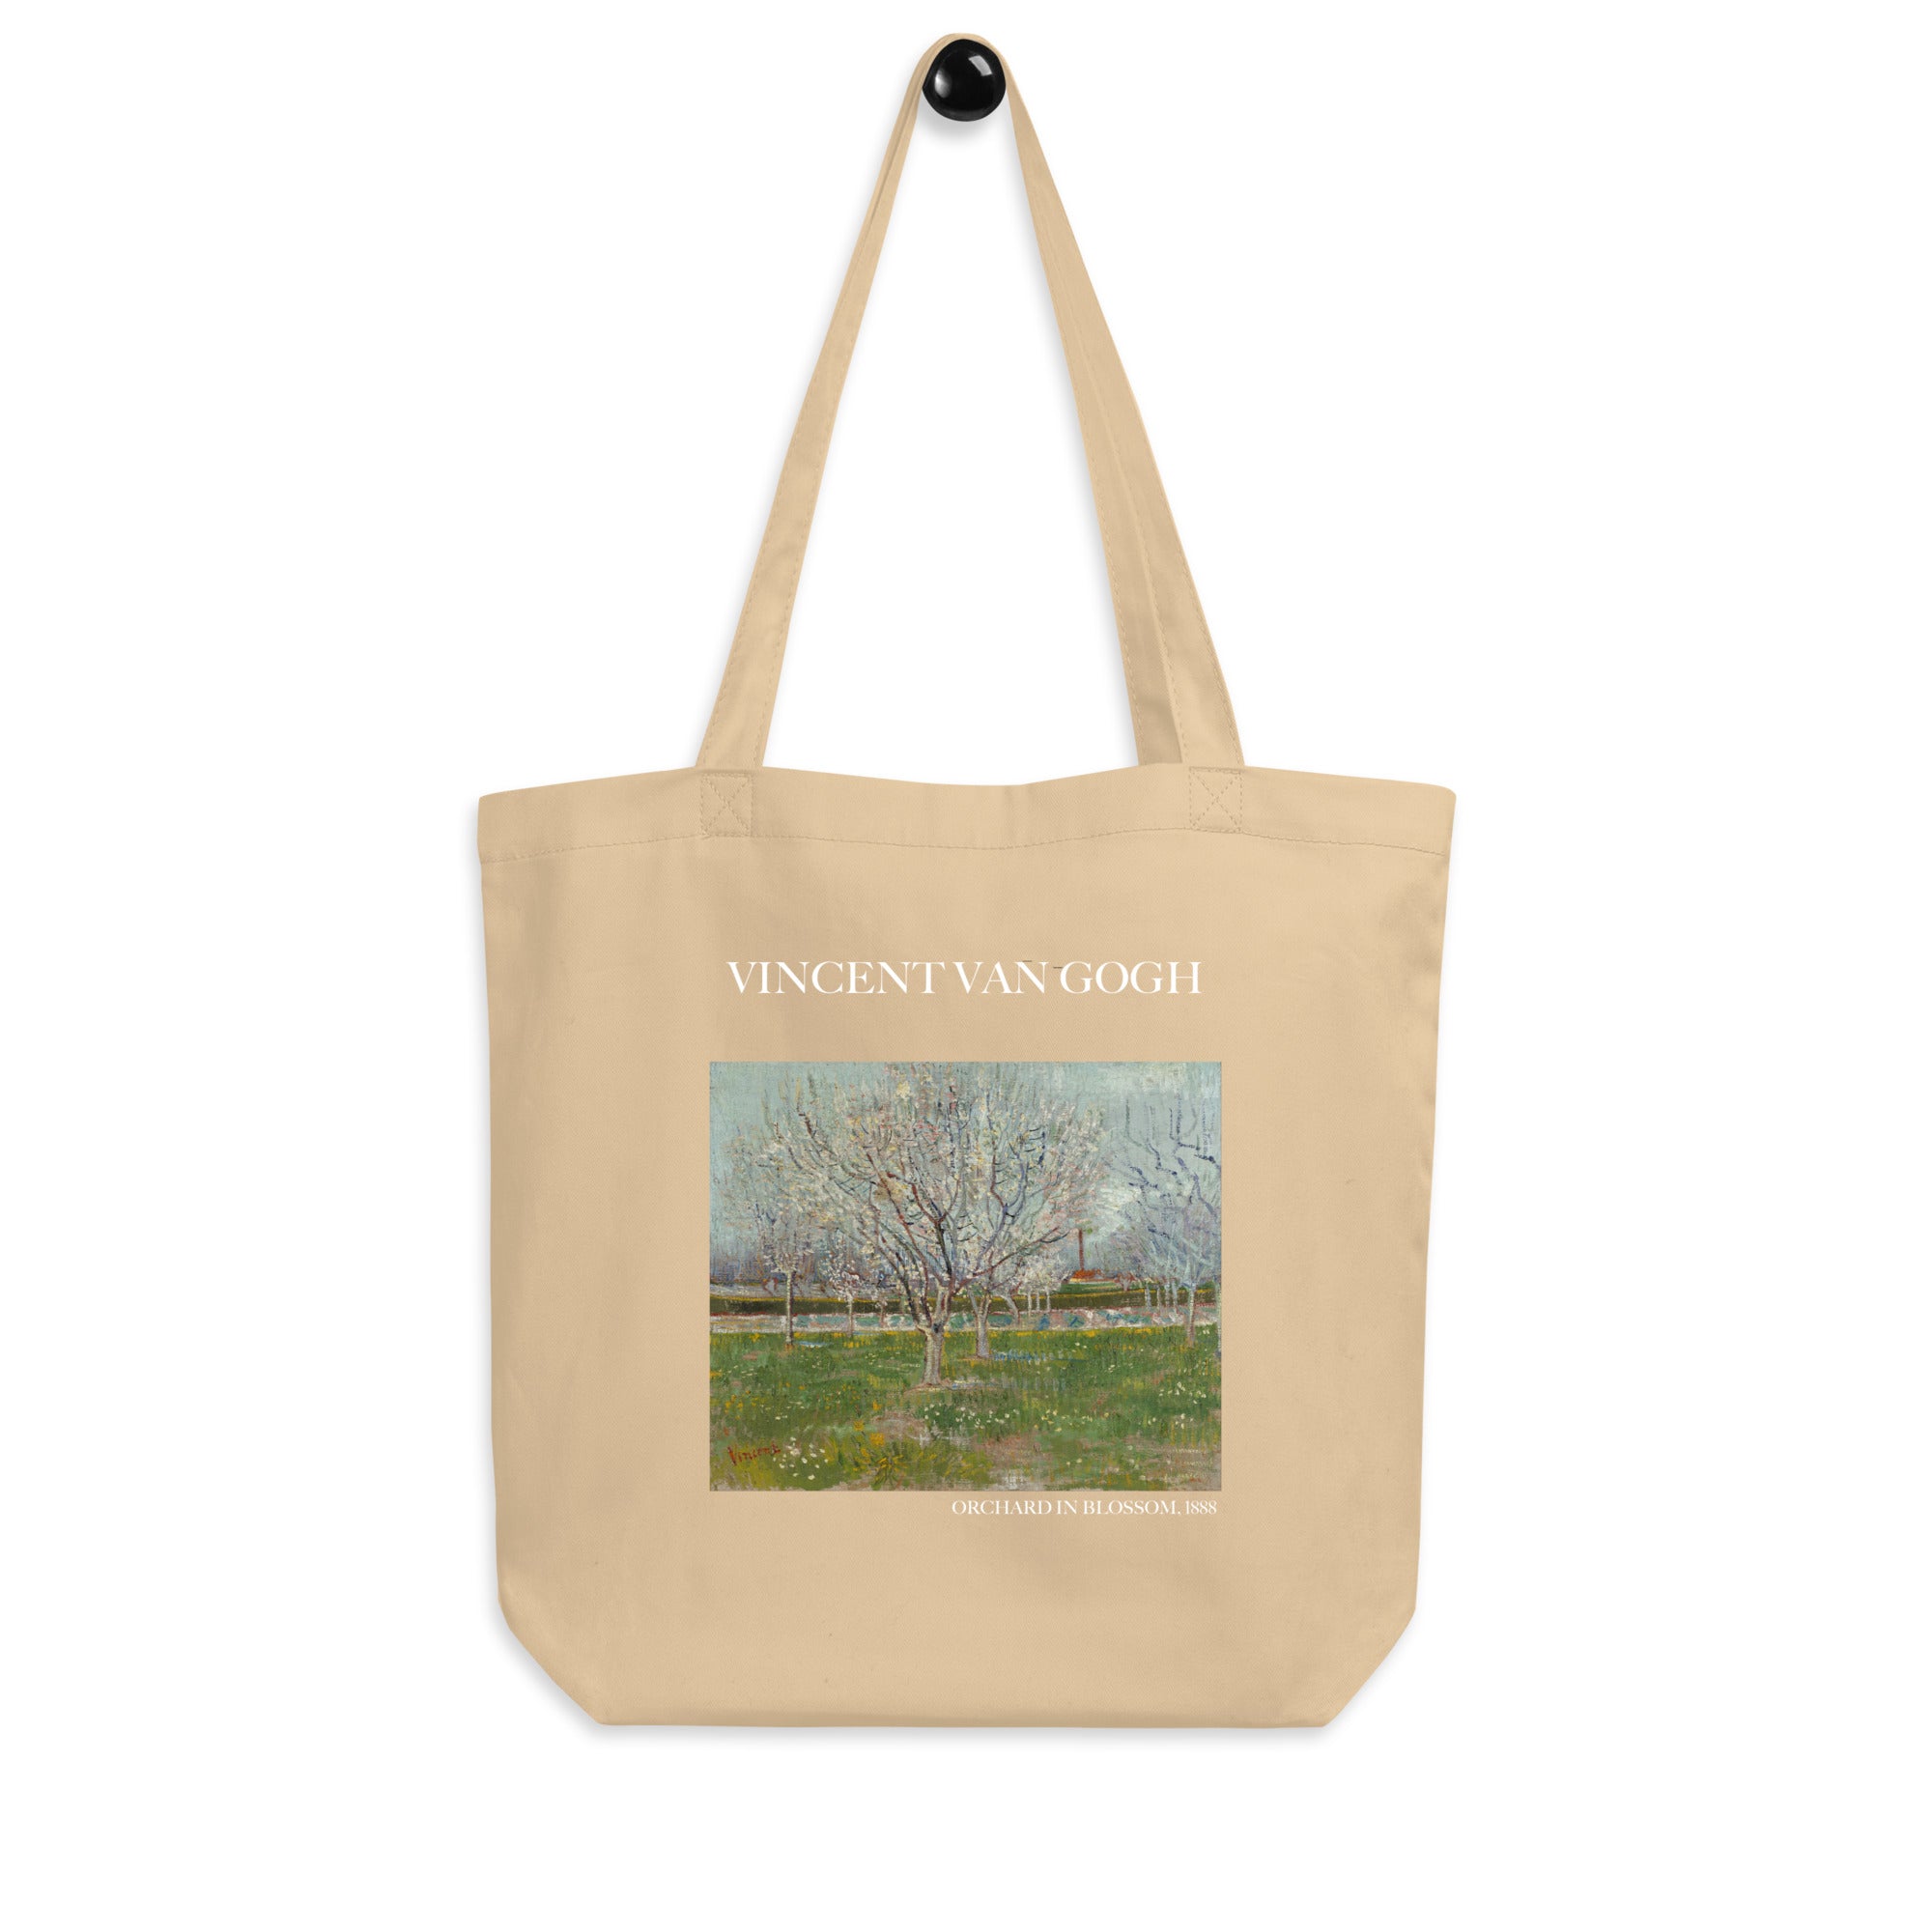 Einkaufstasche „Obstgarten in Blüte“ von Vincent van Gogh, berühmtes Gemälde, umweltfreundliche Kunst-Einkaufstasche